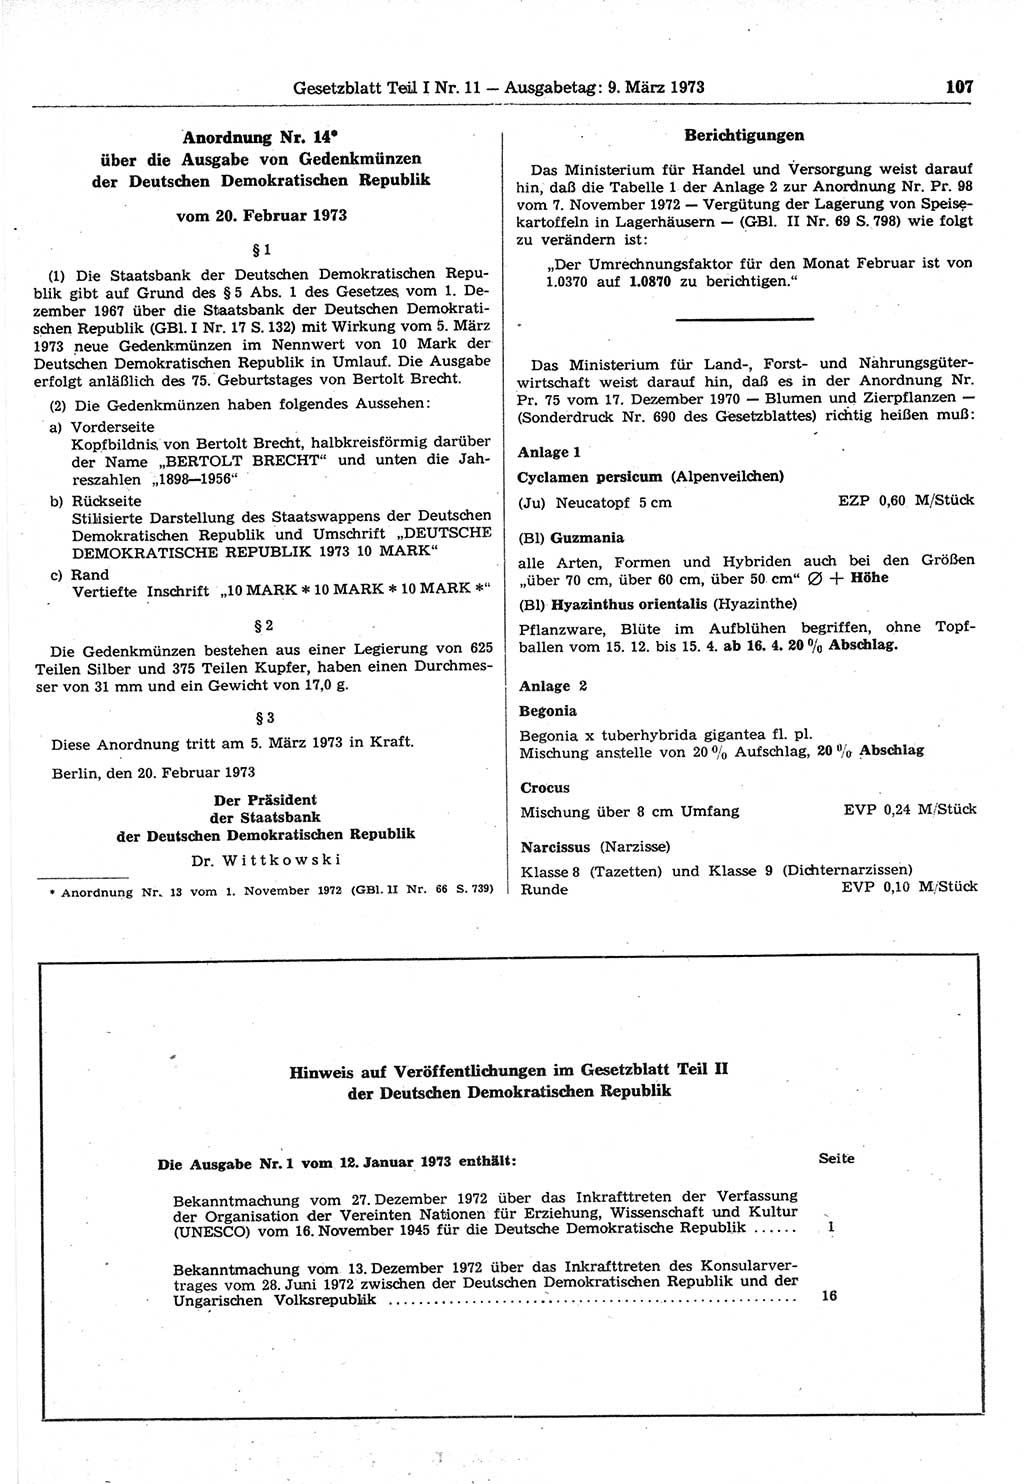 Gesetzblatt (GBl.) der Deutschen Demokratischen Republik (DDR) Teil Ⅰ 1973, Seite 107 (GBl. DDR Ⅰ 1973, S. 107)